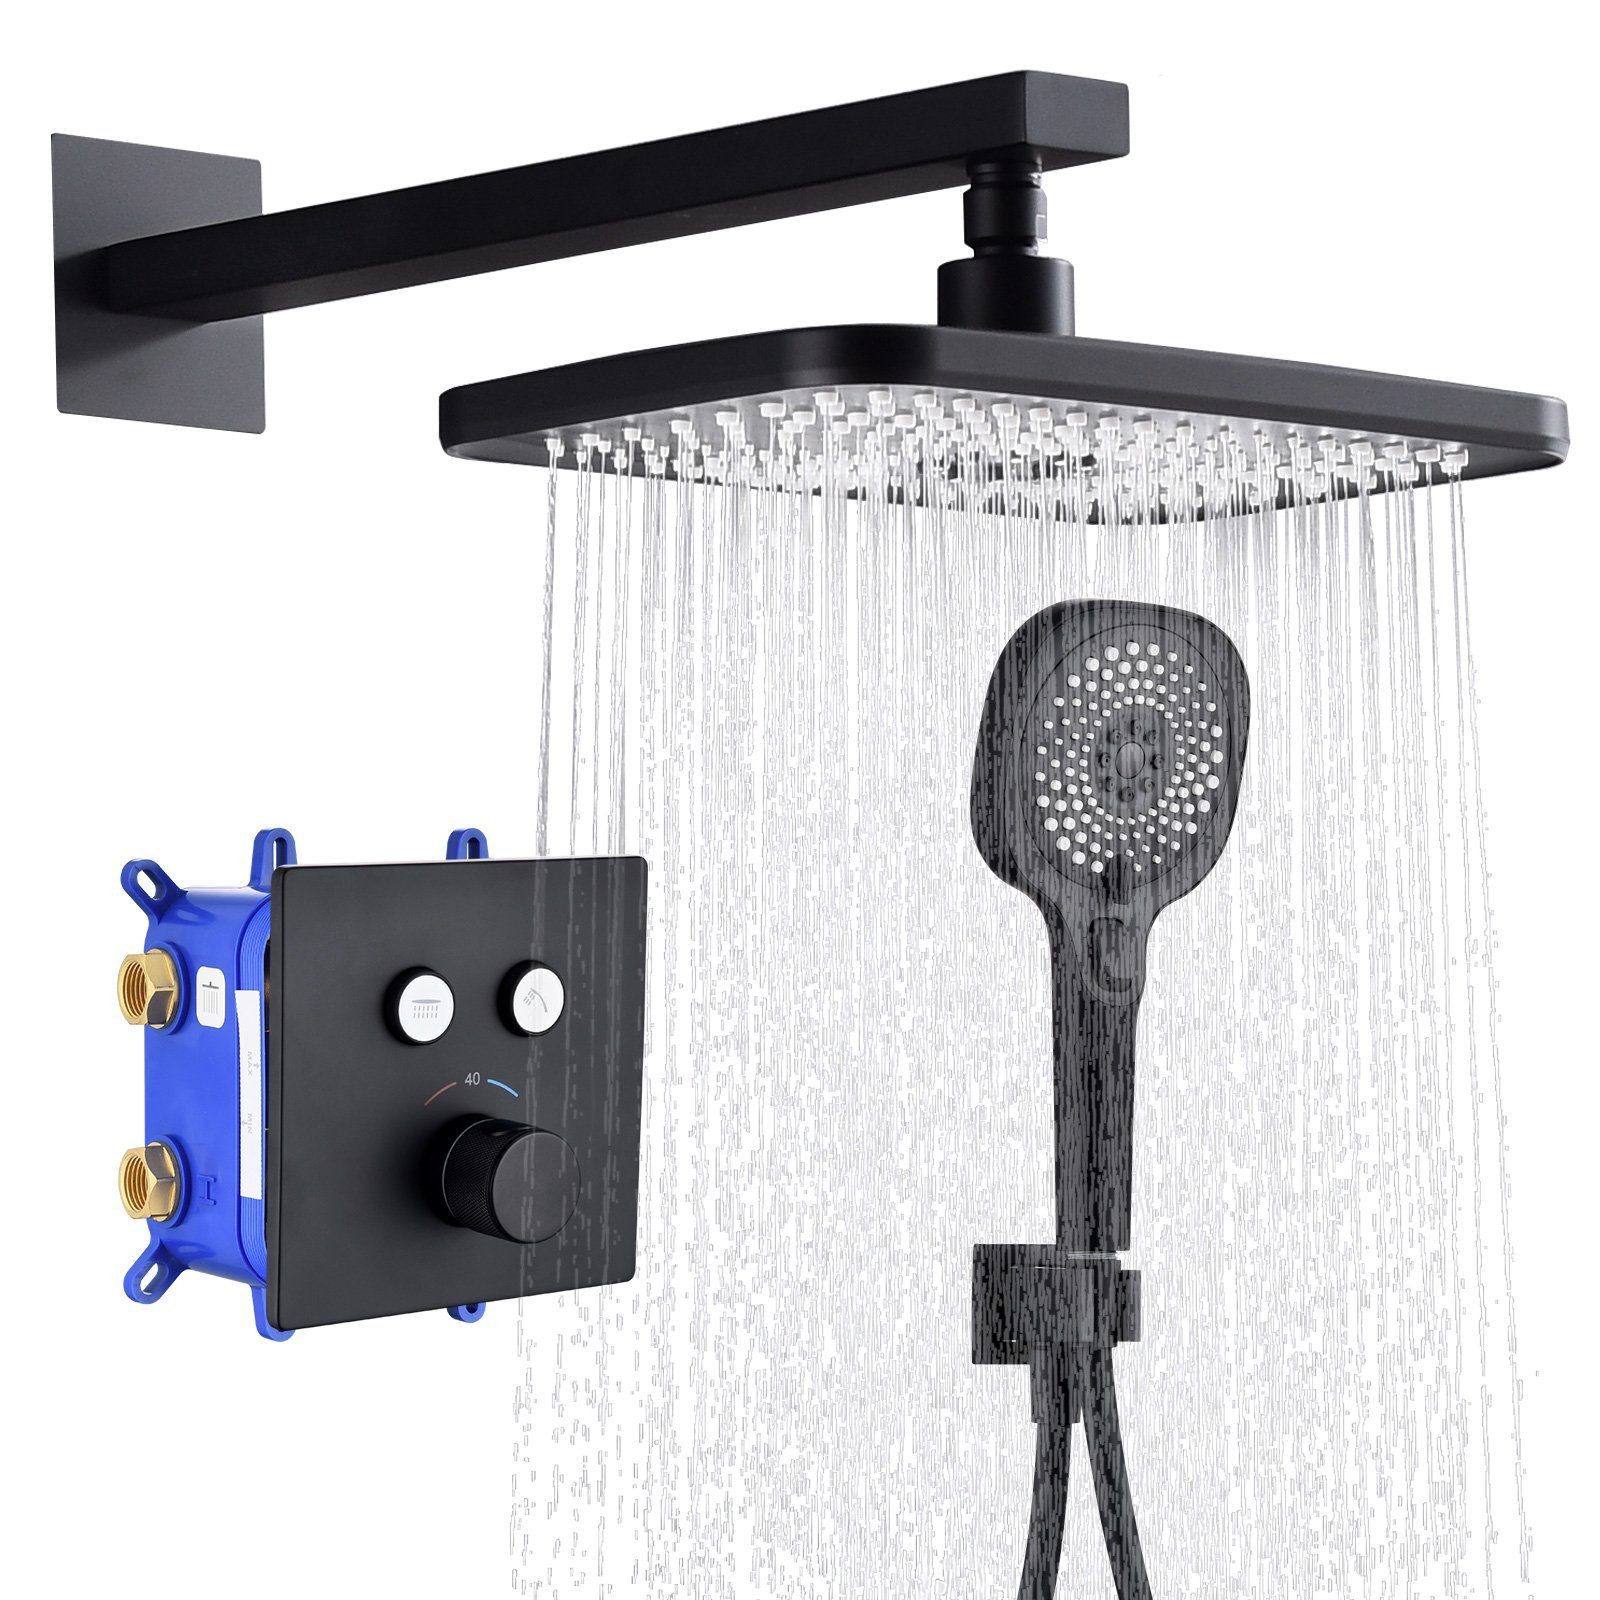 HOMELODY Duschsystem Schwarz Unterputz Duschsystem mit Thermostat 40℃ Messingkörper, 3 Strahlart(en), Regendusche inkl.Übergroßer Kopfbrause Handbrause mit 3 Funktionen